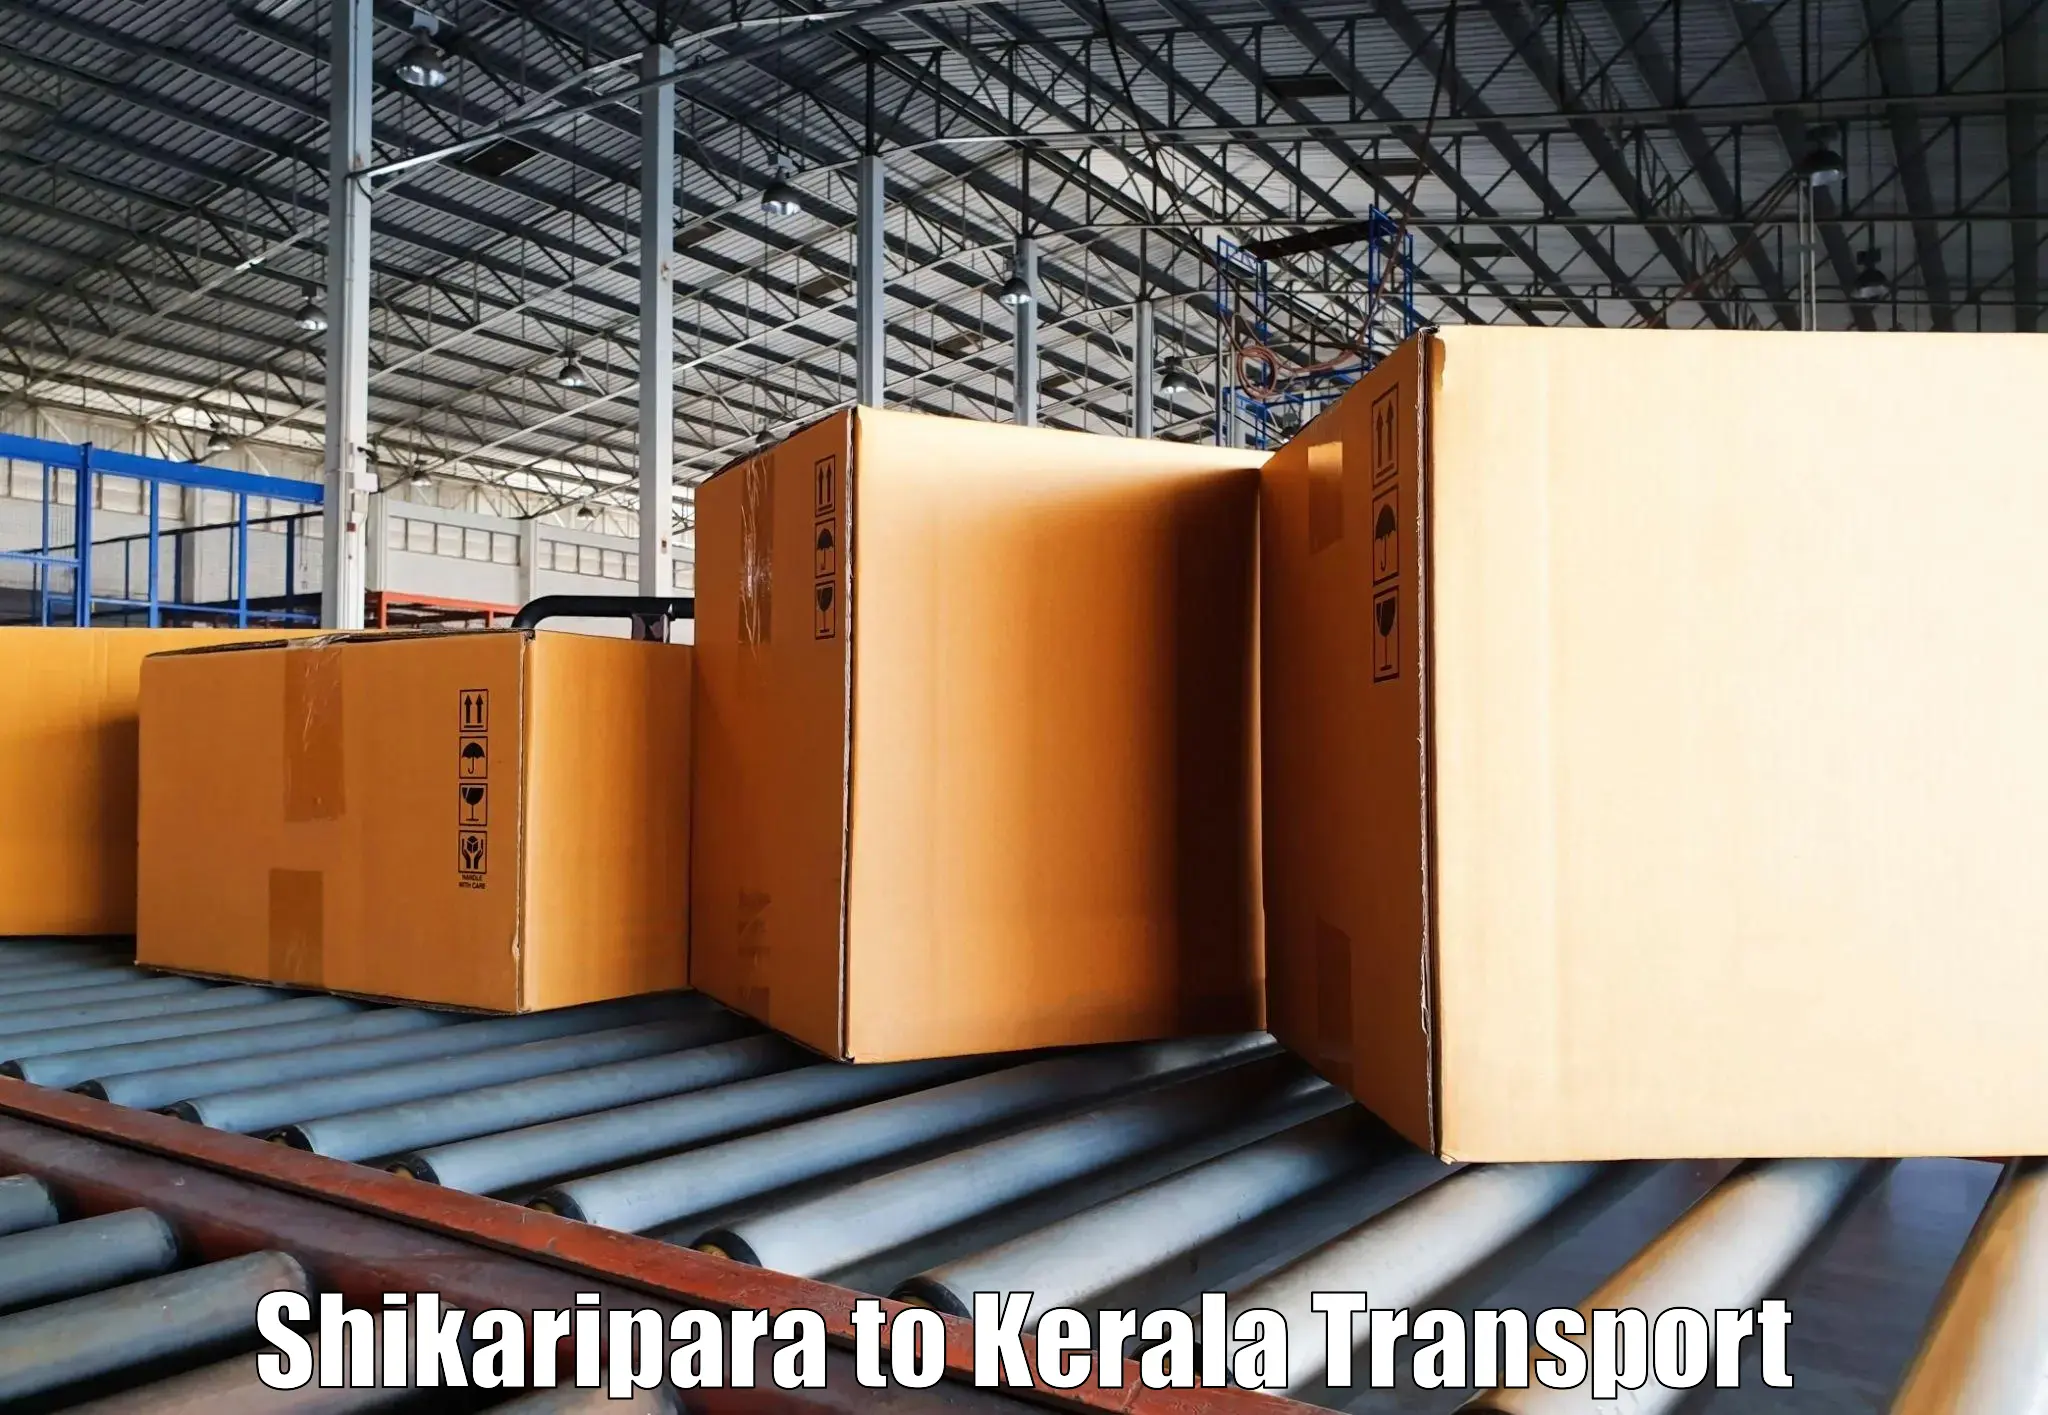 Transport shared services Shikaripara to Kattappana